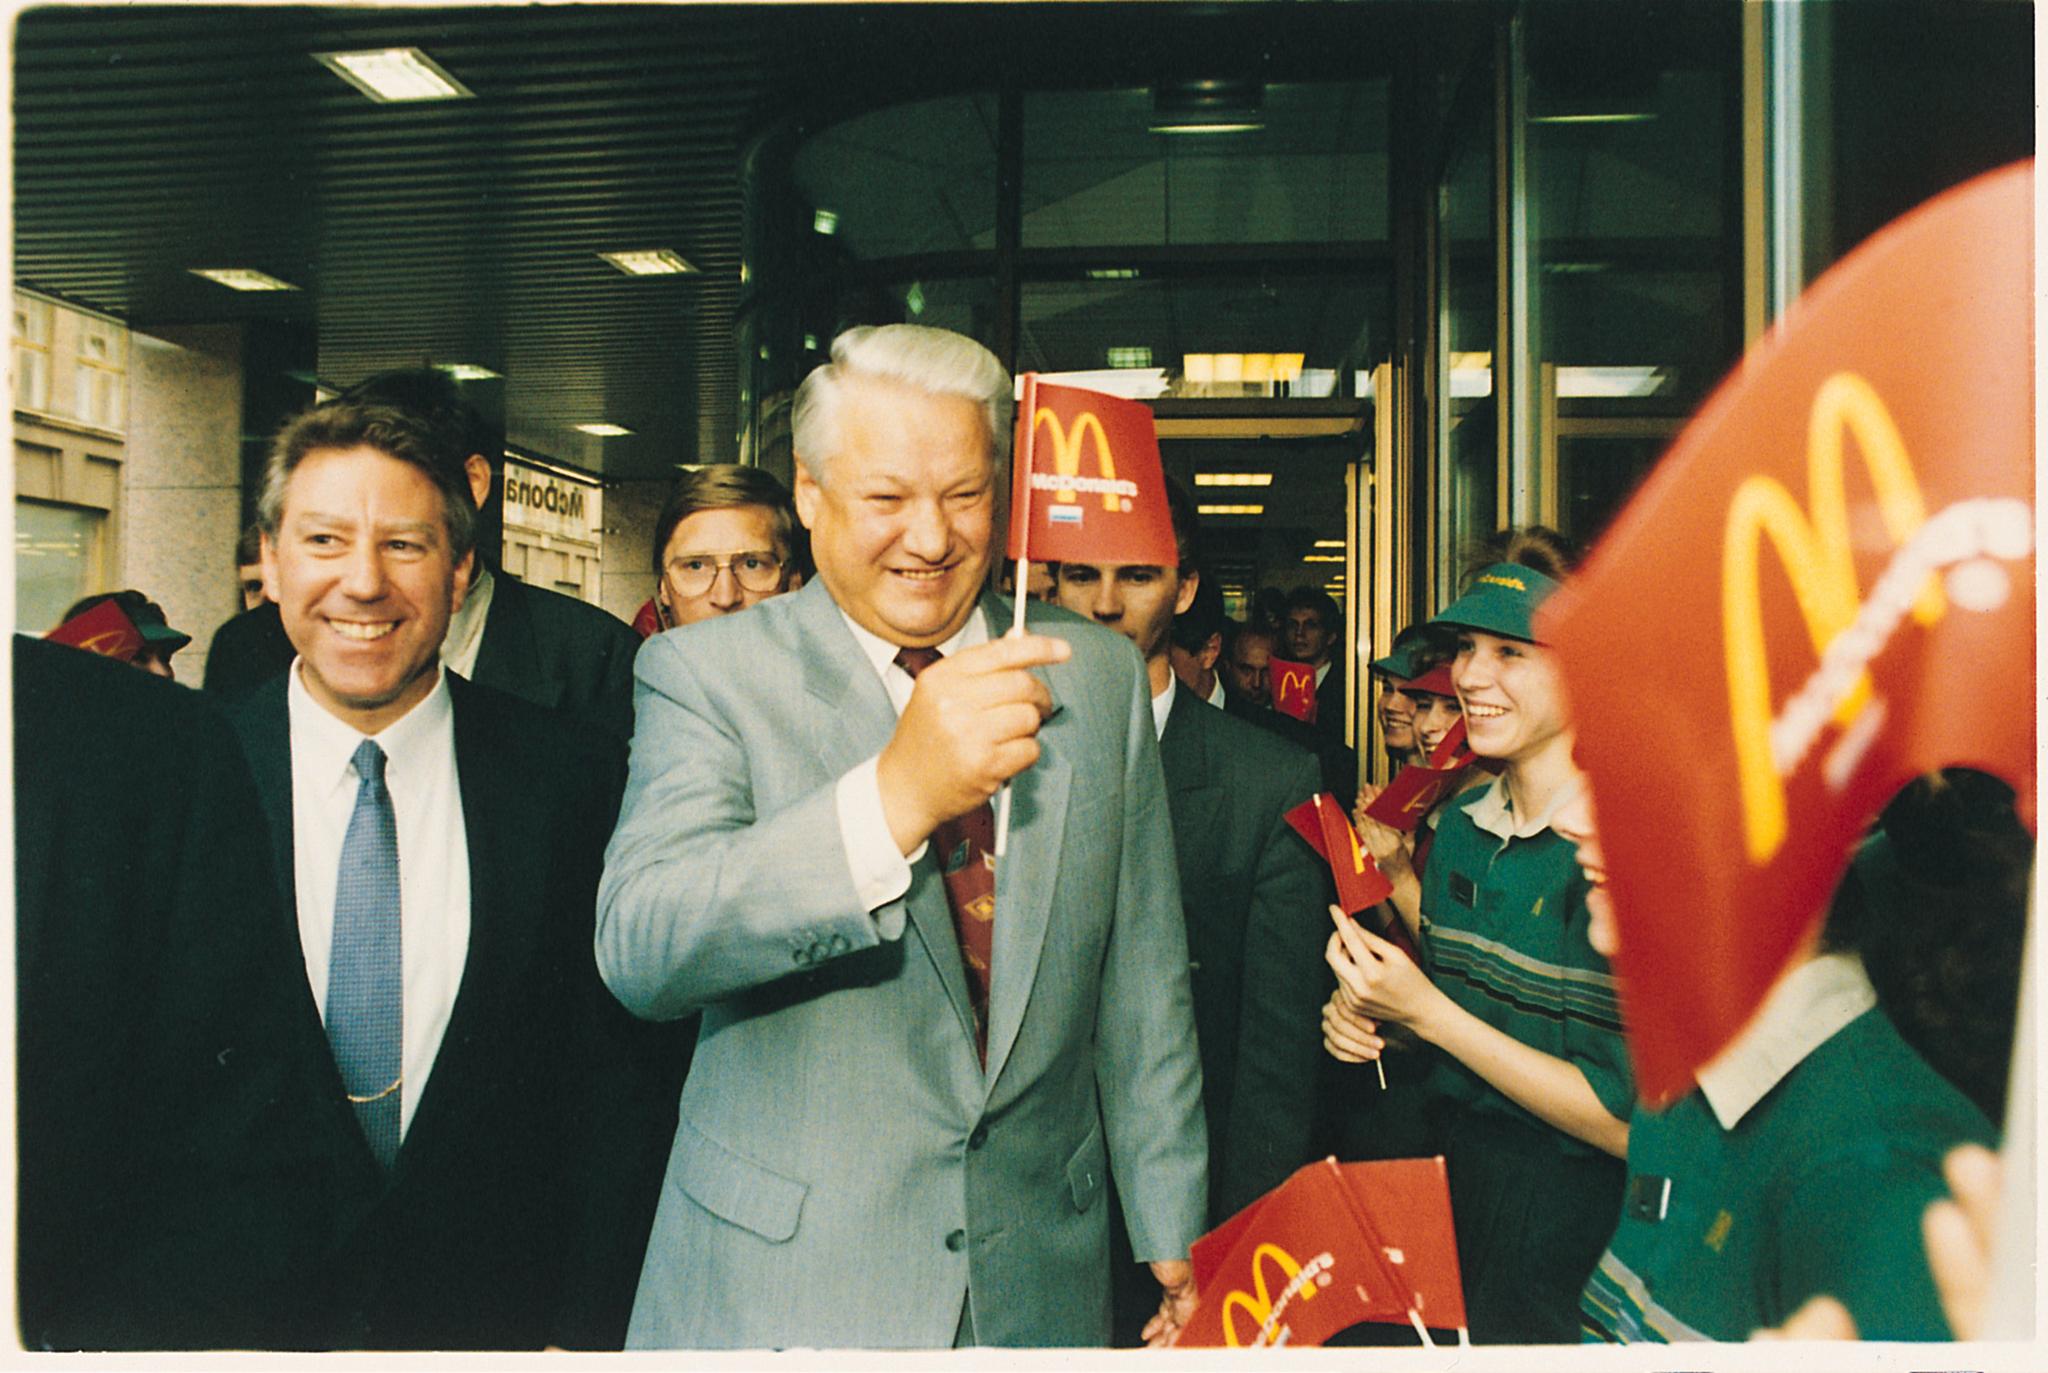 1993: Daværende president Boris Jeltsin åpner McDonalds restaurant nr. 2 i Moskva.